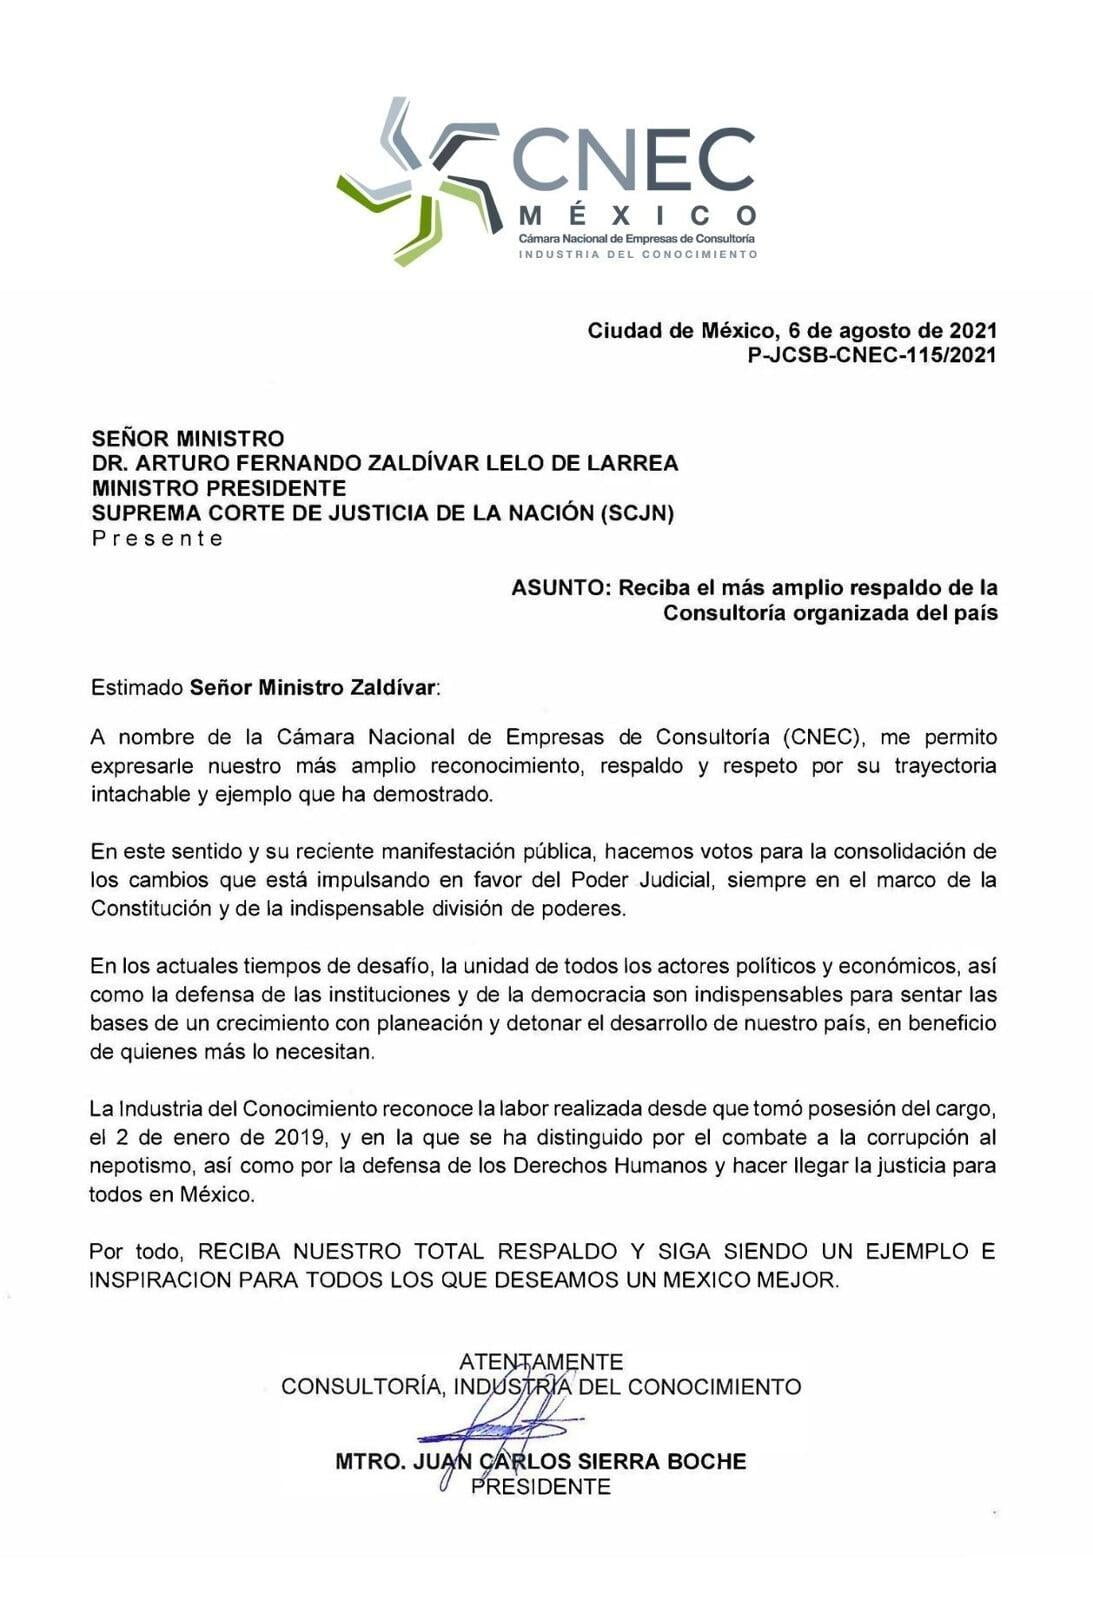 RESPALDA LA CONSULTORÍA ORGANIZADA DEL PAÍS DECISIÓN DEL MINISTRO ARTURO ZALDÍVAR LELO DE LARREA